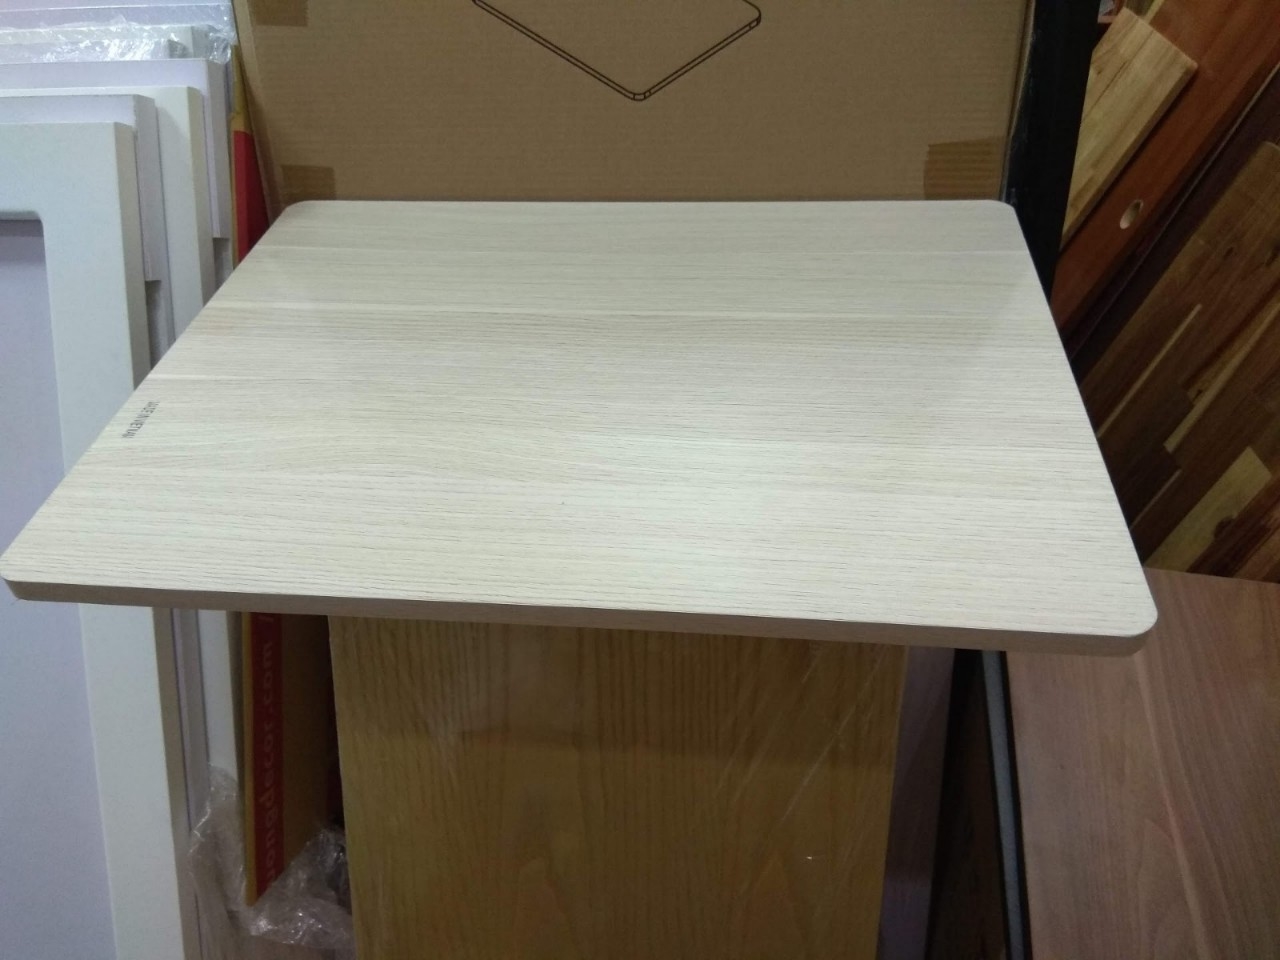 Mặt bàn 45x60cm gỗ MDF màu trắng vân gỗ